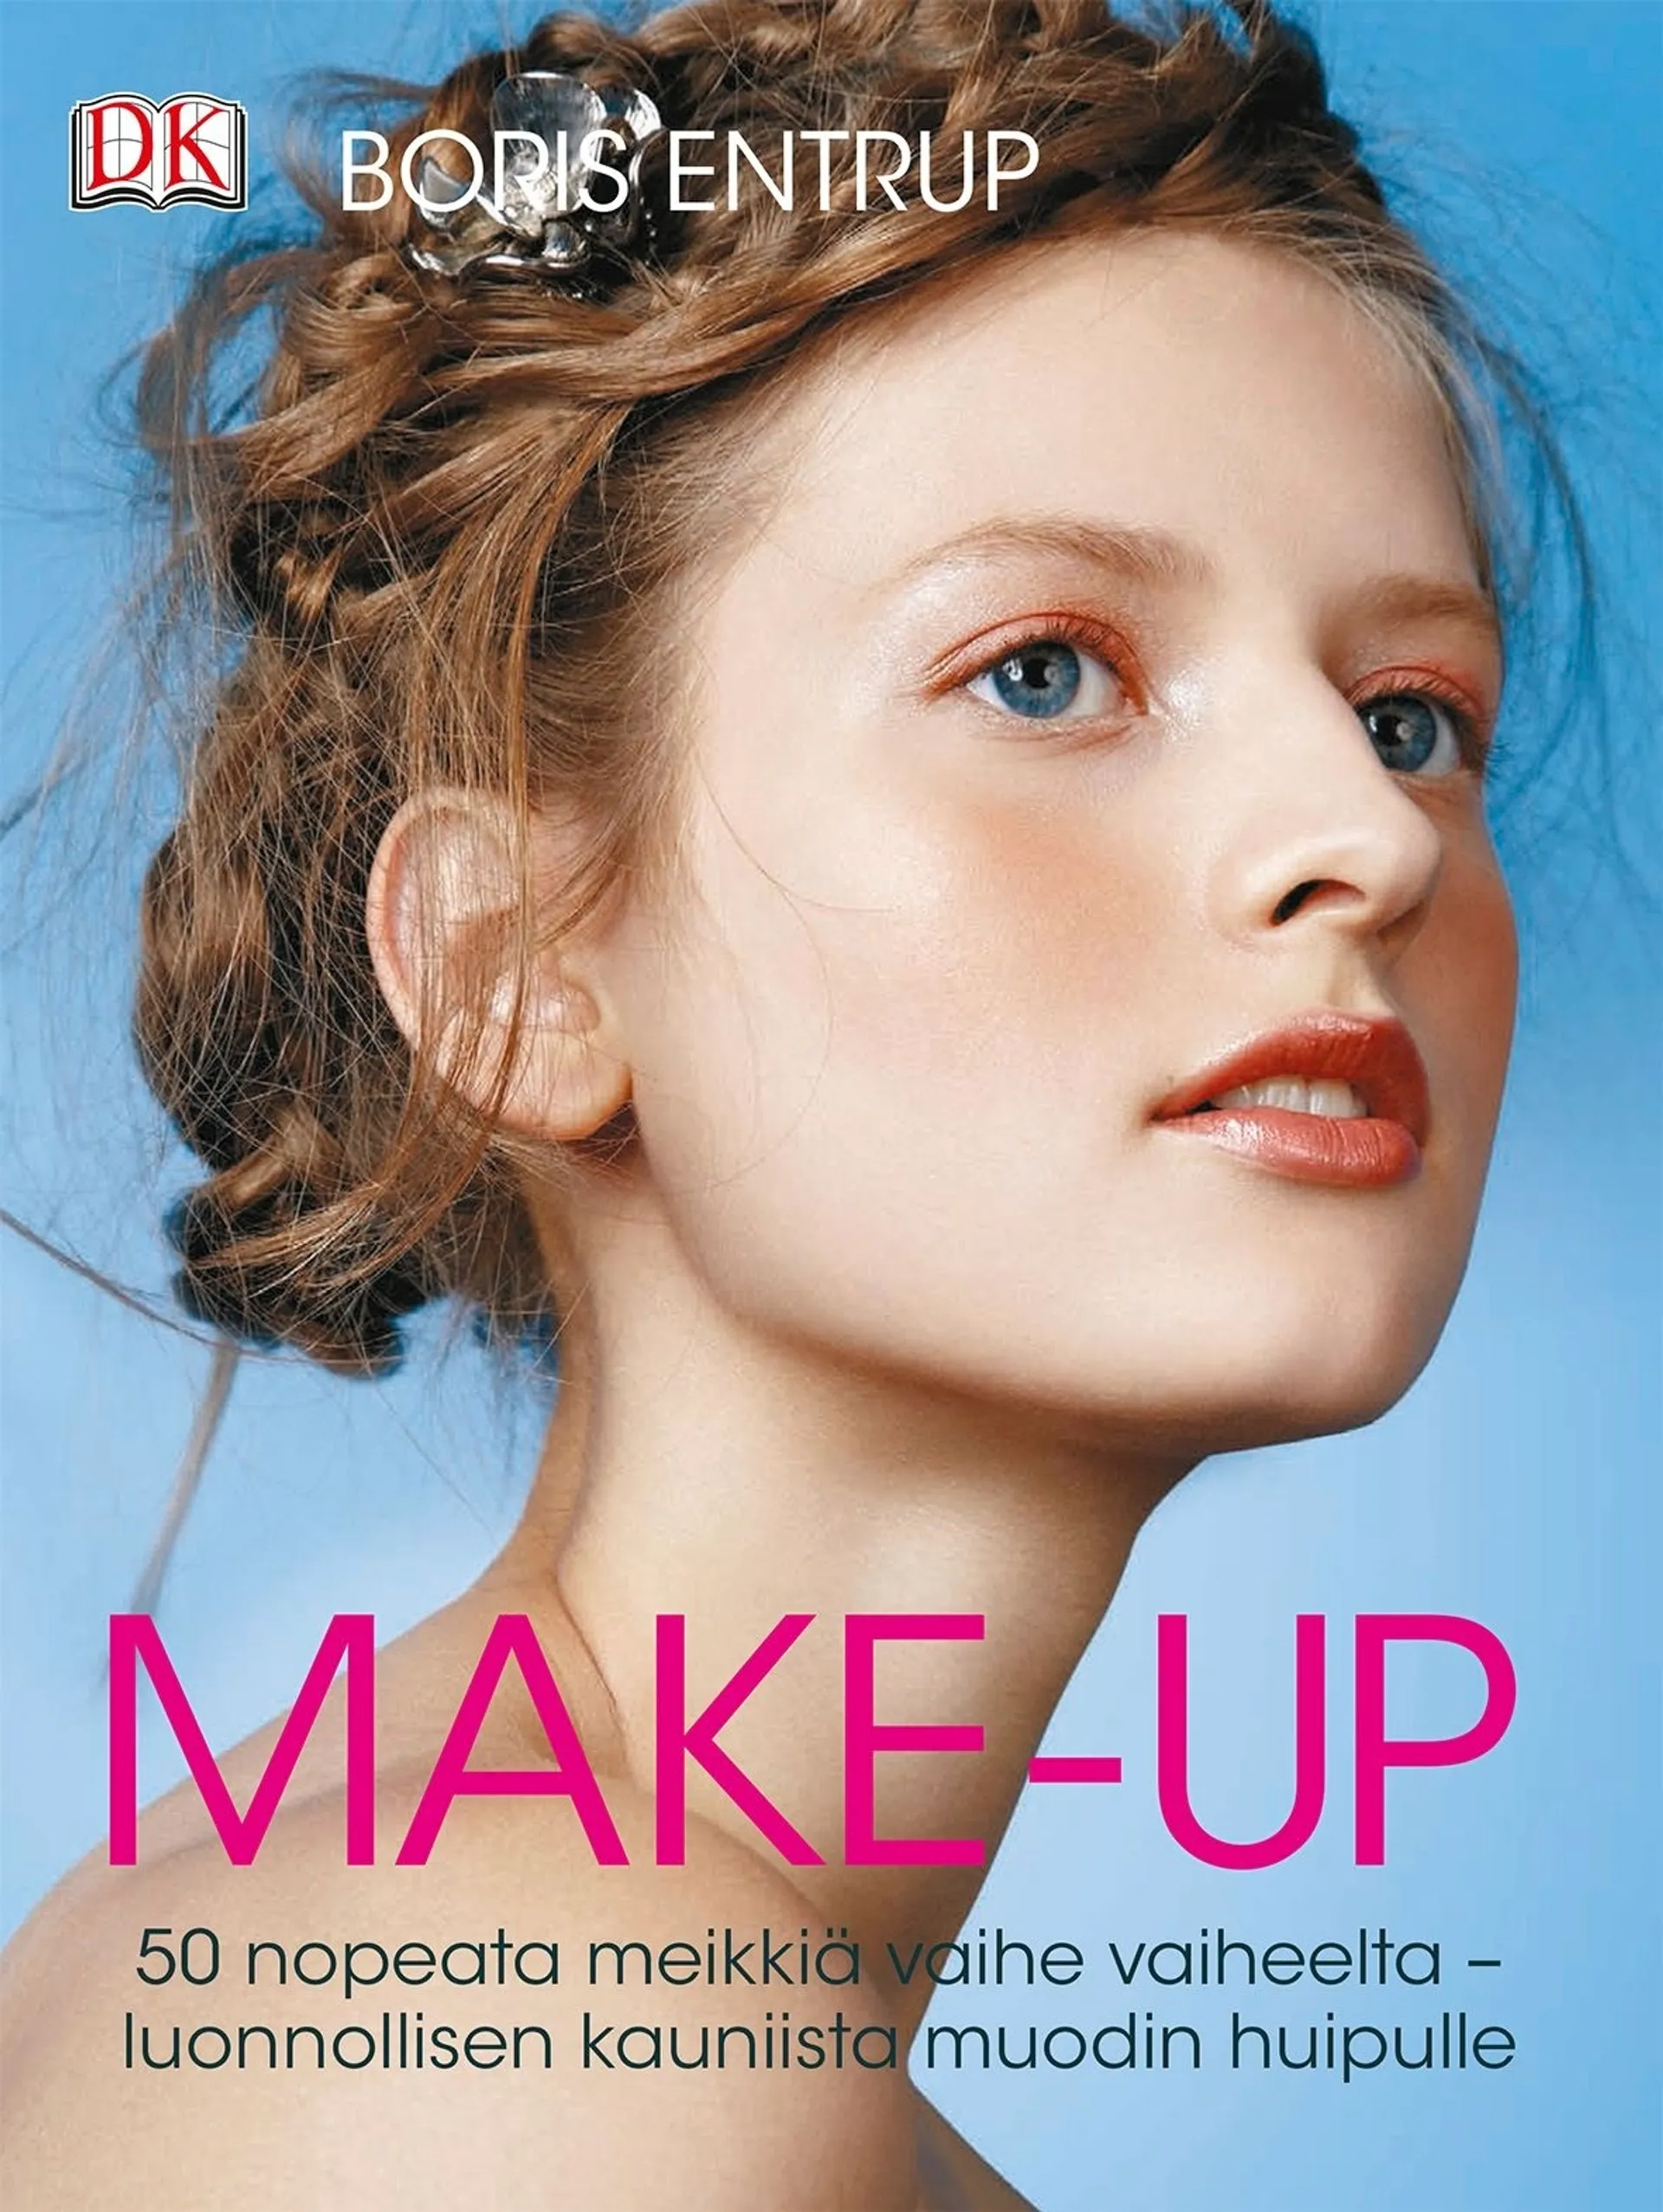 Entrup, Make-up - 50 nopeata meikkiä vaihe vaiheelta - luonnollisen kauniista muodin huipulle